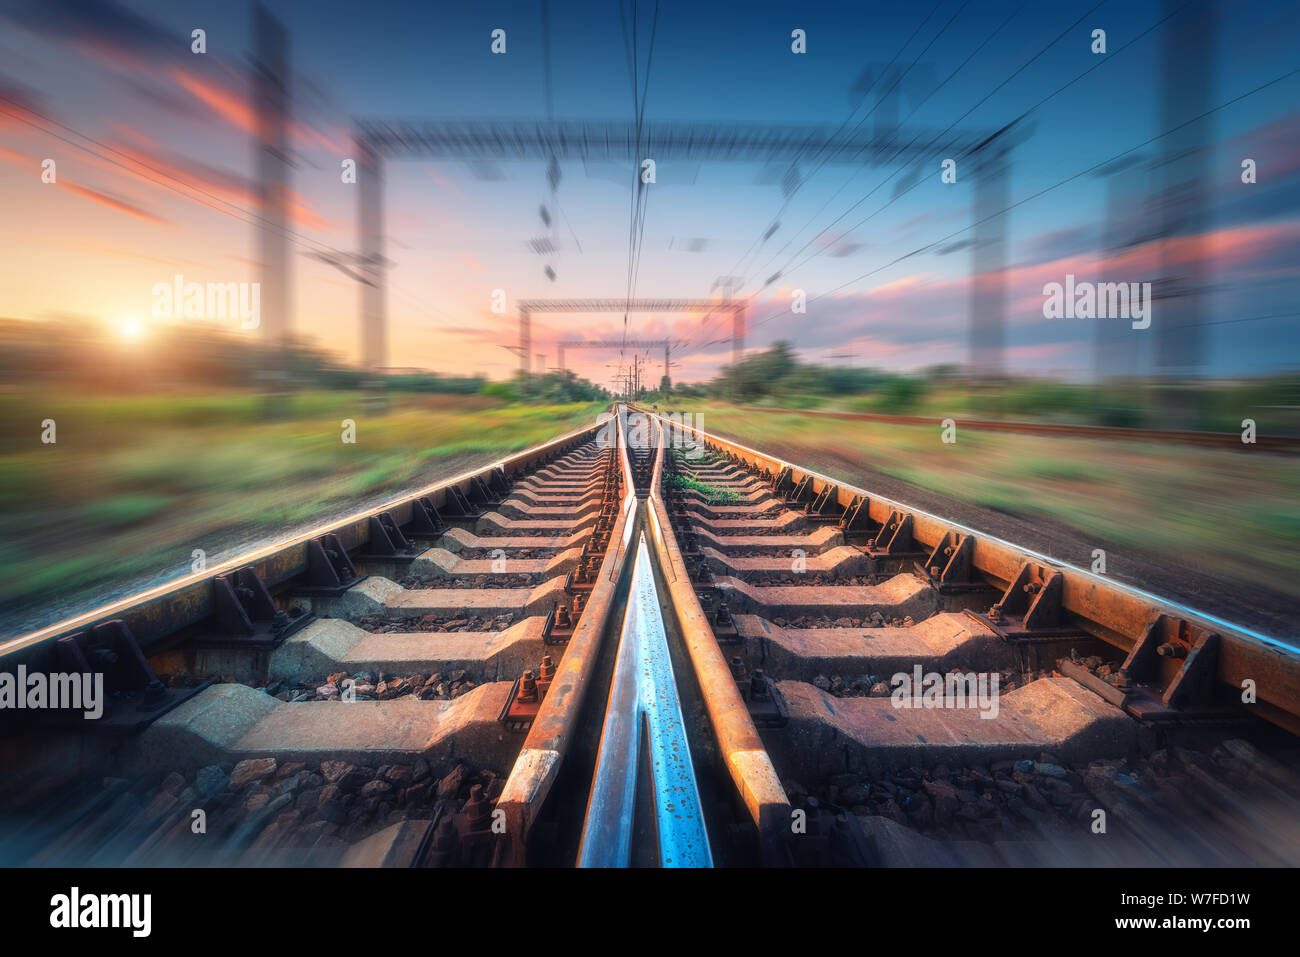 Eisenbahn und schönen Himmel bei Sonnenuntergang mit Motion blur Effekt Stockfoto